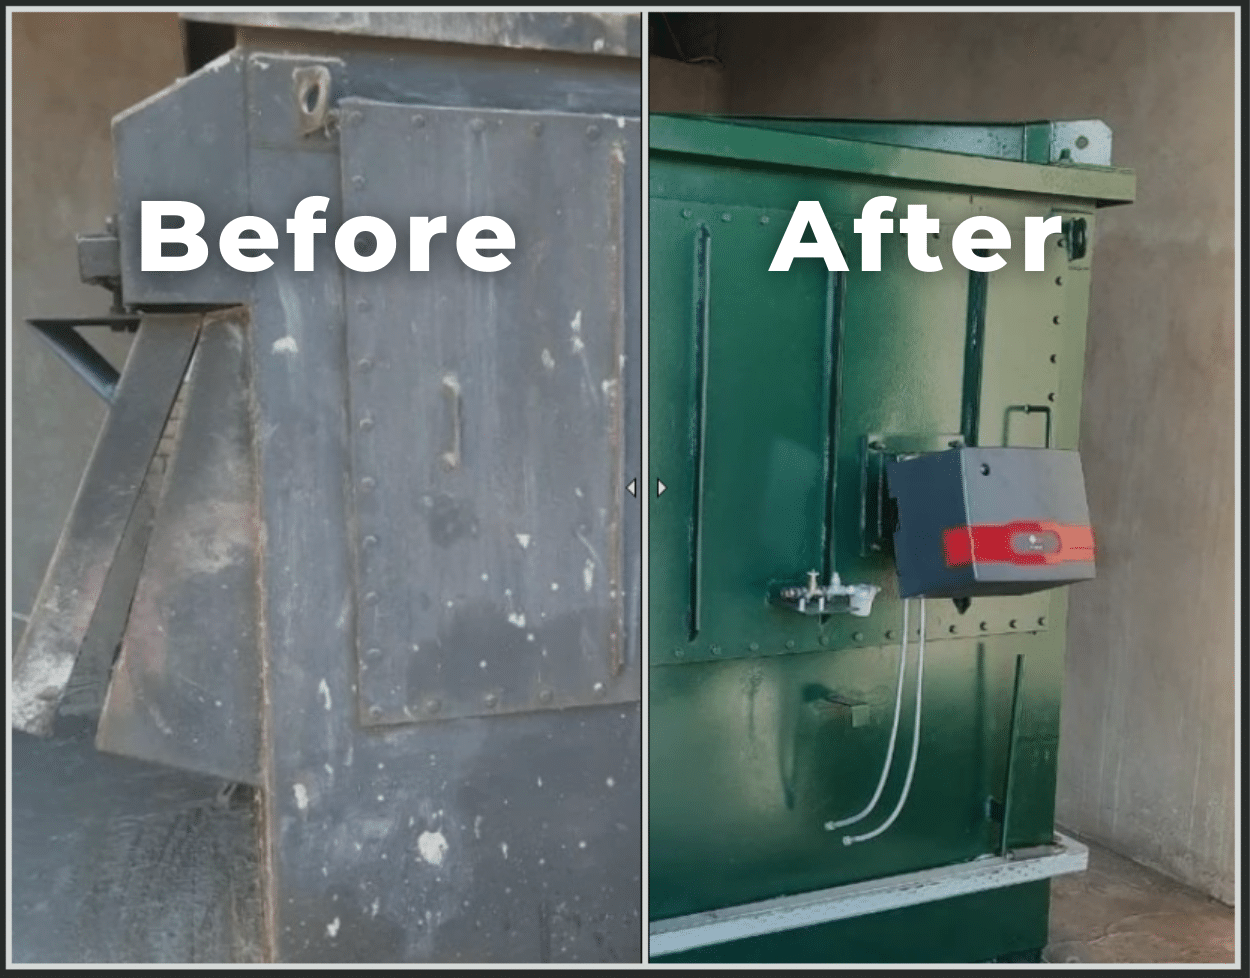 Before and After - Refurbished of MacroBurn V100 Incinerator